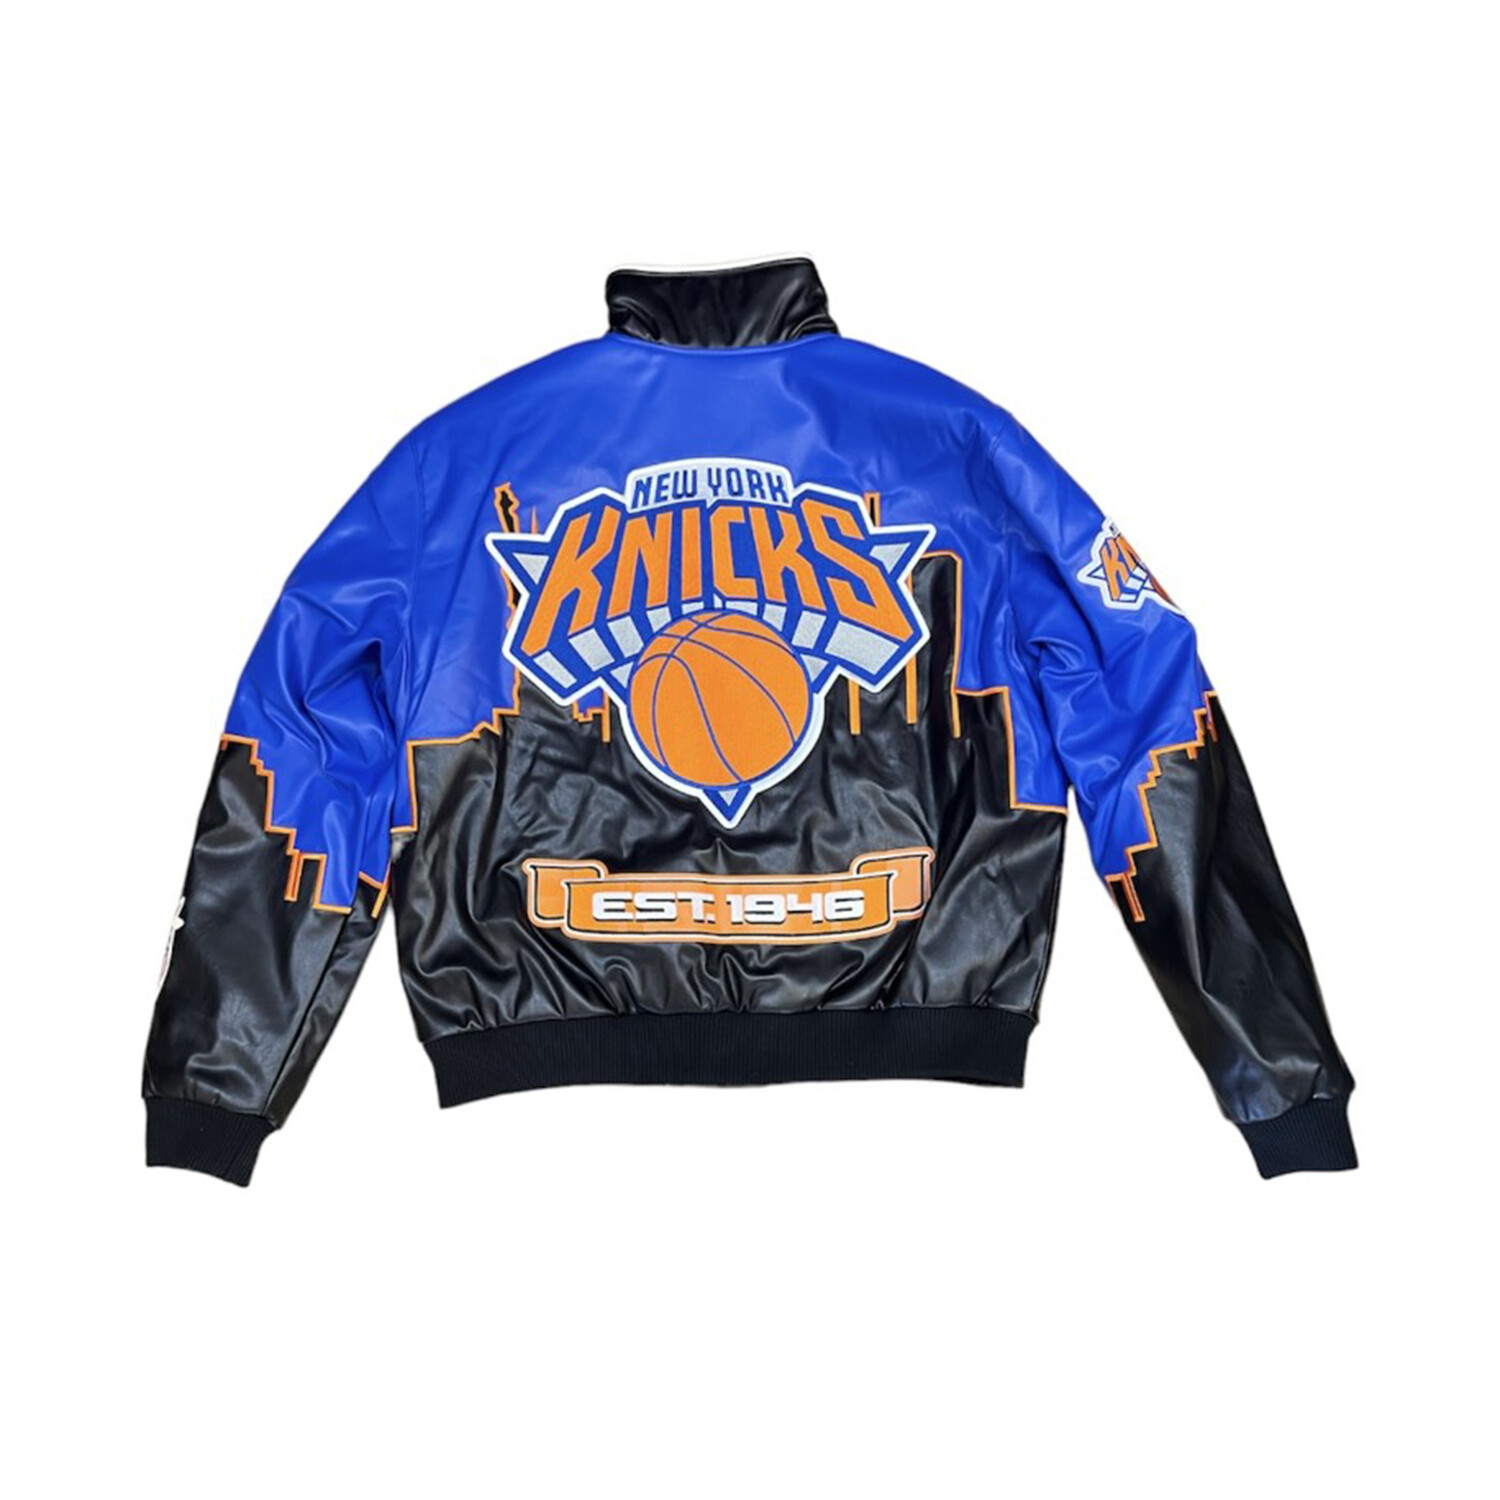 Michael Jordan Leather Jacket - RockStar Jacket